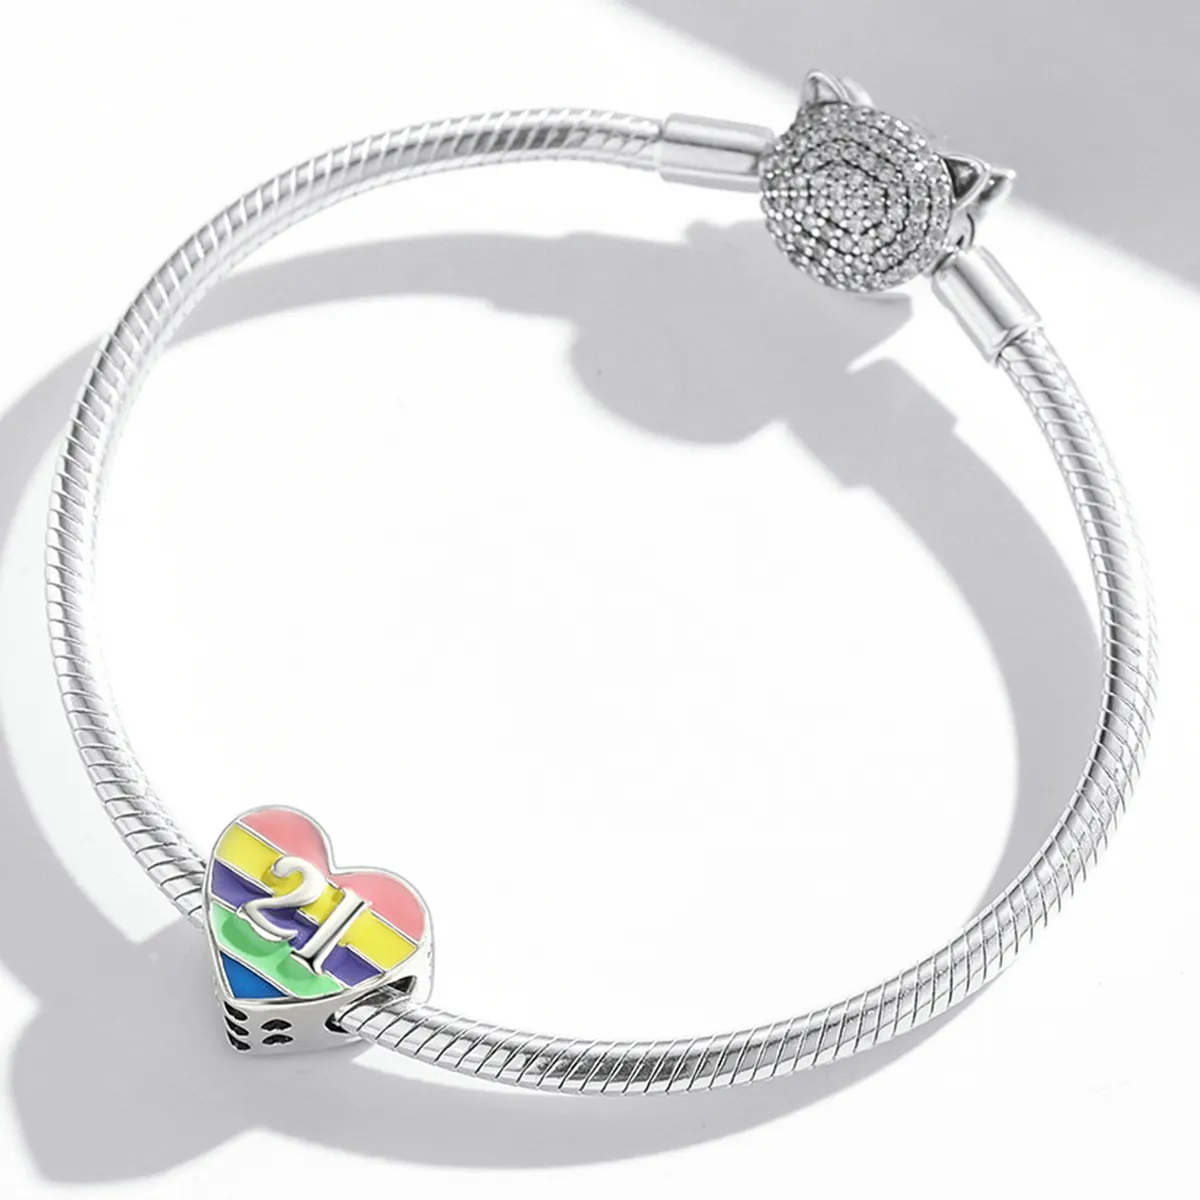 Pandantiv stil Pandora în formă de inimă în culorile curcubeului - BSC548